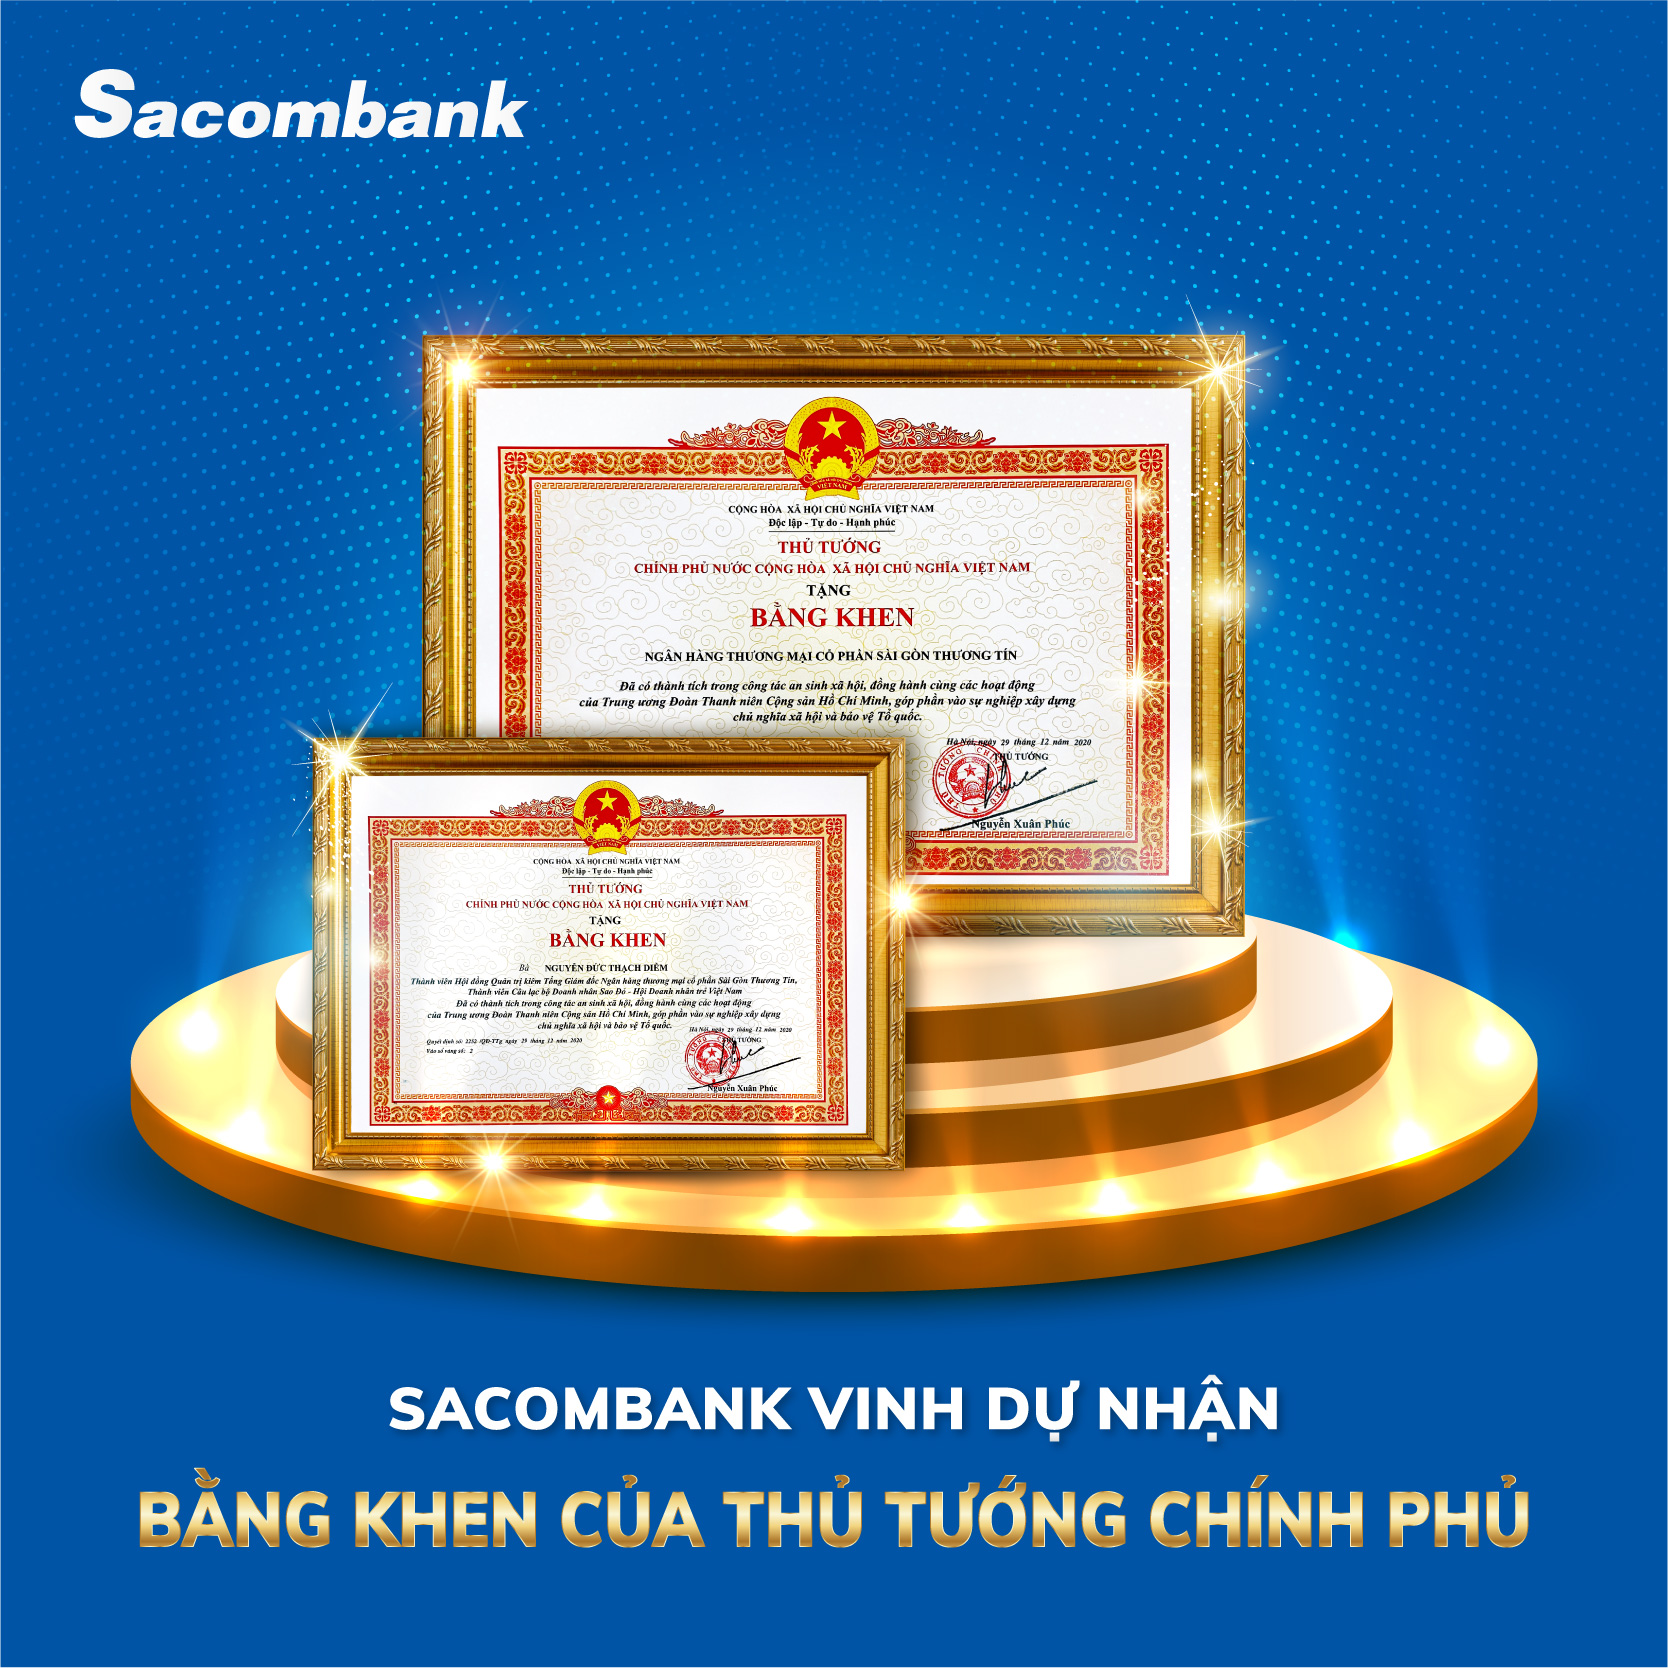 Sacombank nhận bằng khen của Thủ tướng Chính phủ